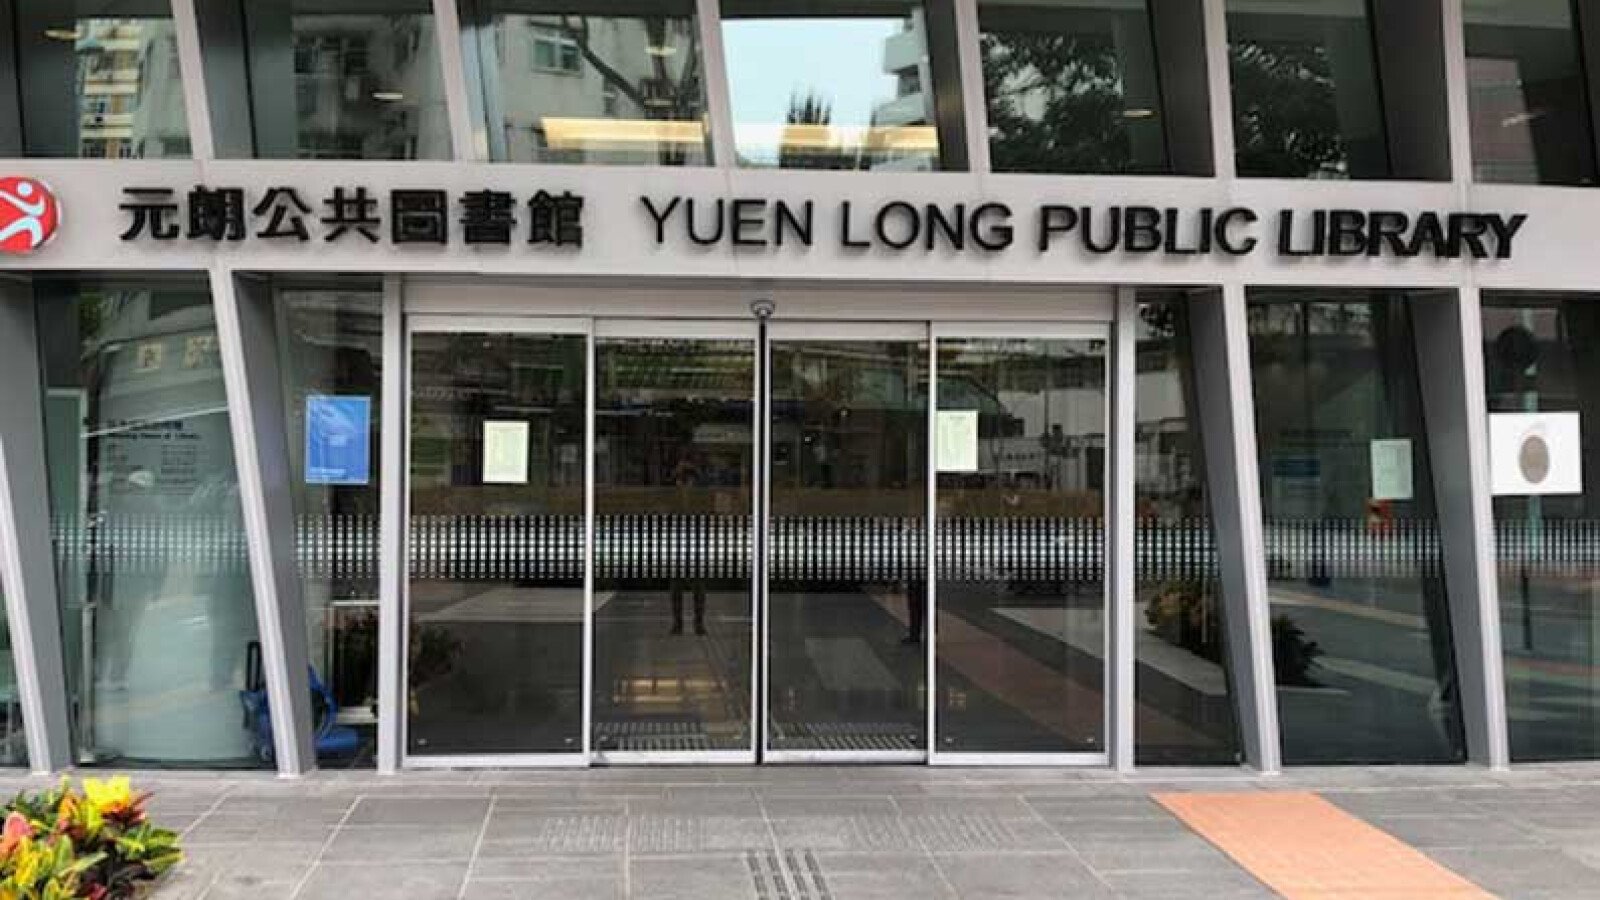 YUEN LONG LIBRARY, HONG KONG